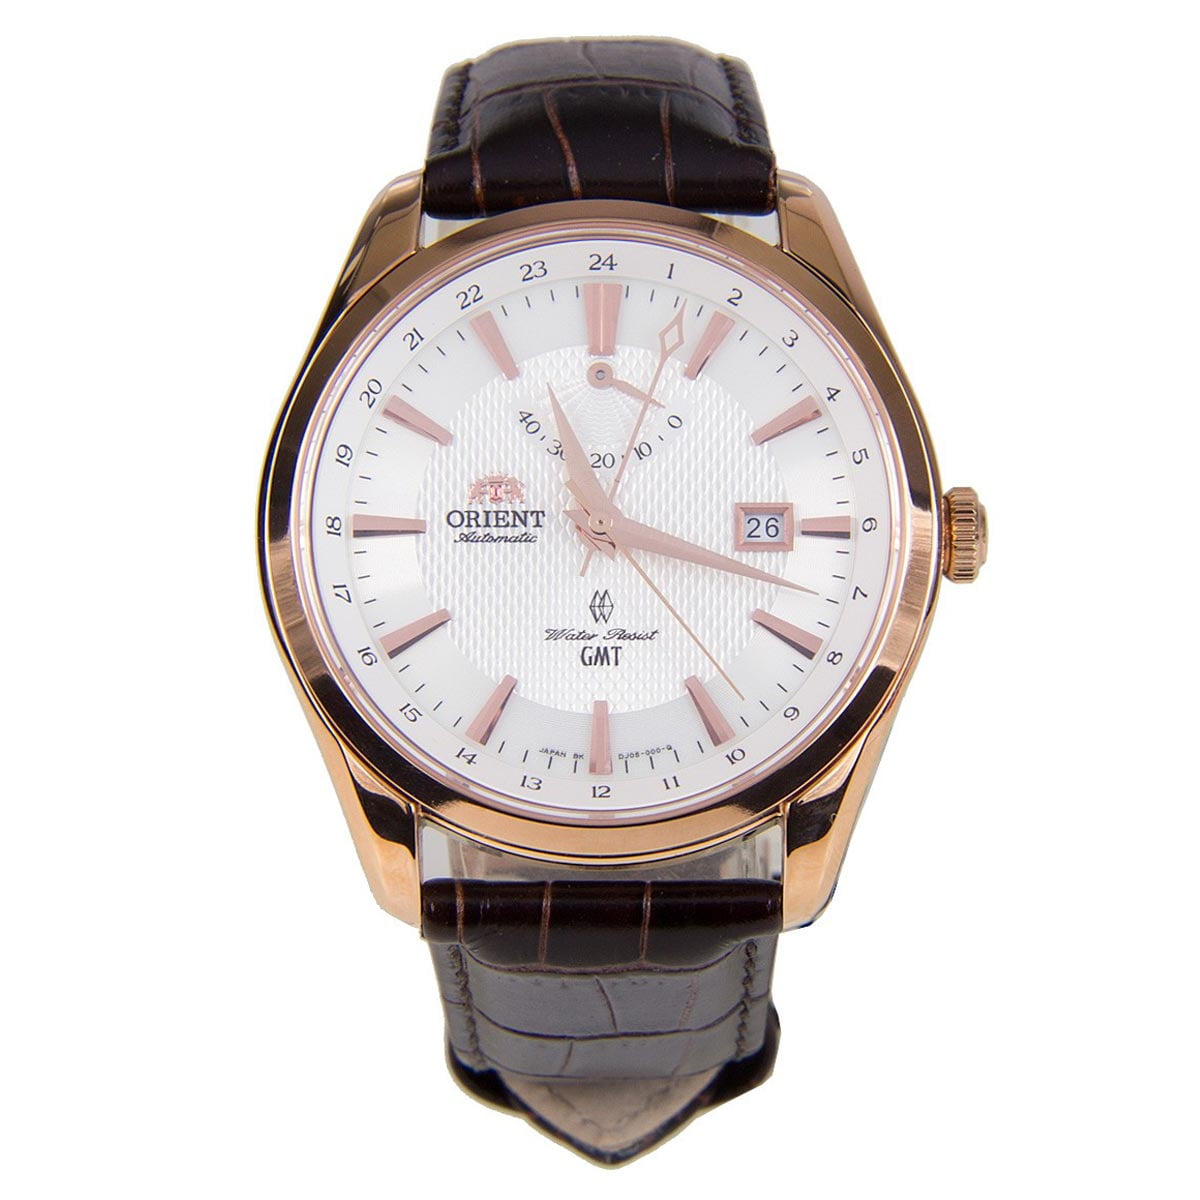 Наручные часы automatic. Наручные часы Orient dj05001w. Orient dj05003w. Orient Polaris GMT. Часы Ориент GMT.